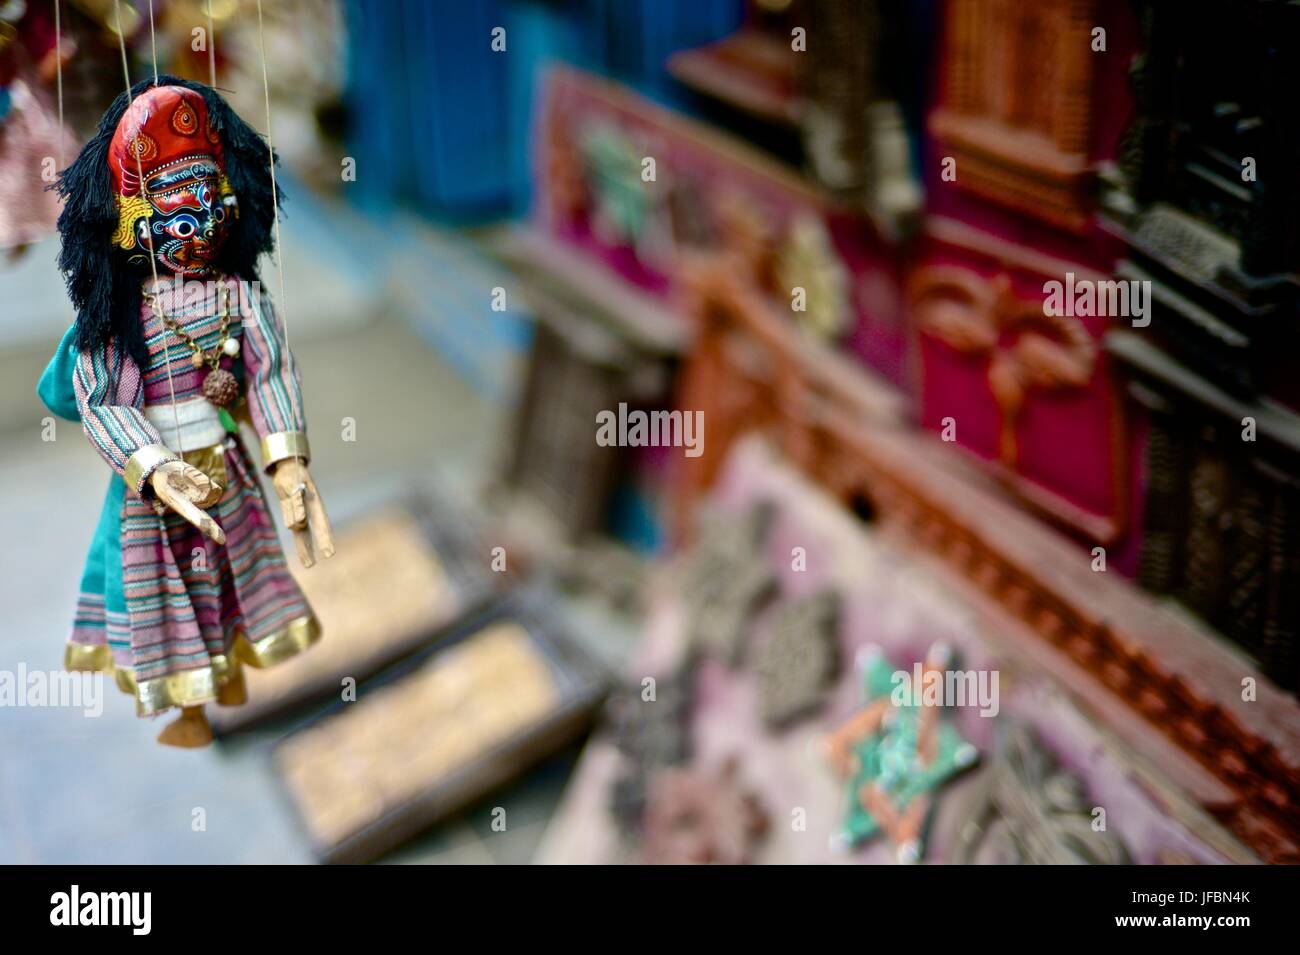 Eine handgefertigte Nepalesische Marionette hängt in einem Markt. Stockfoto